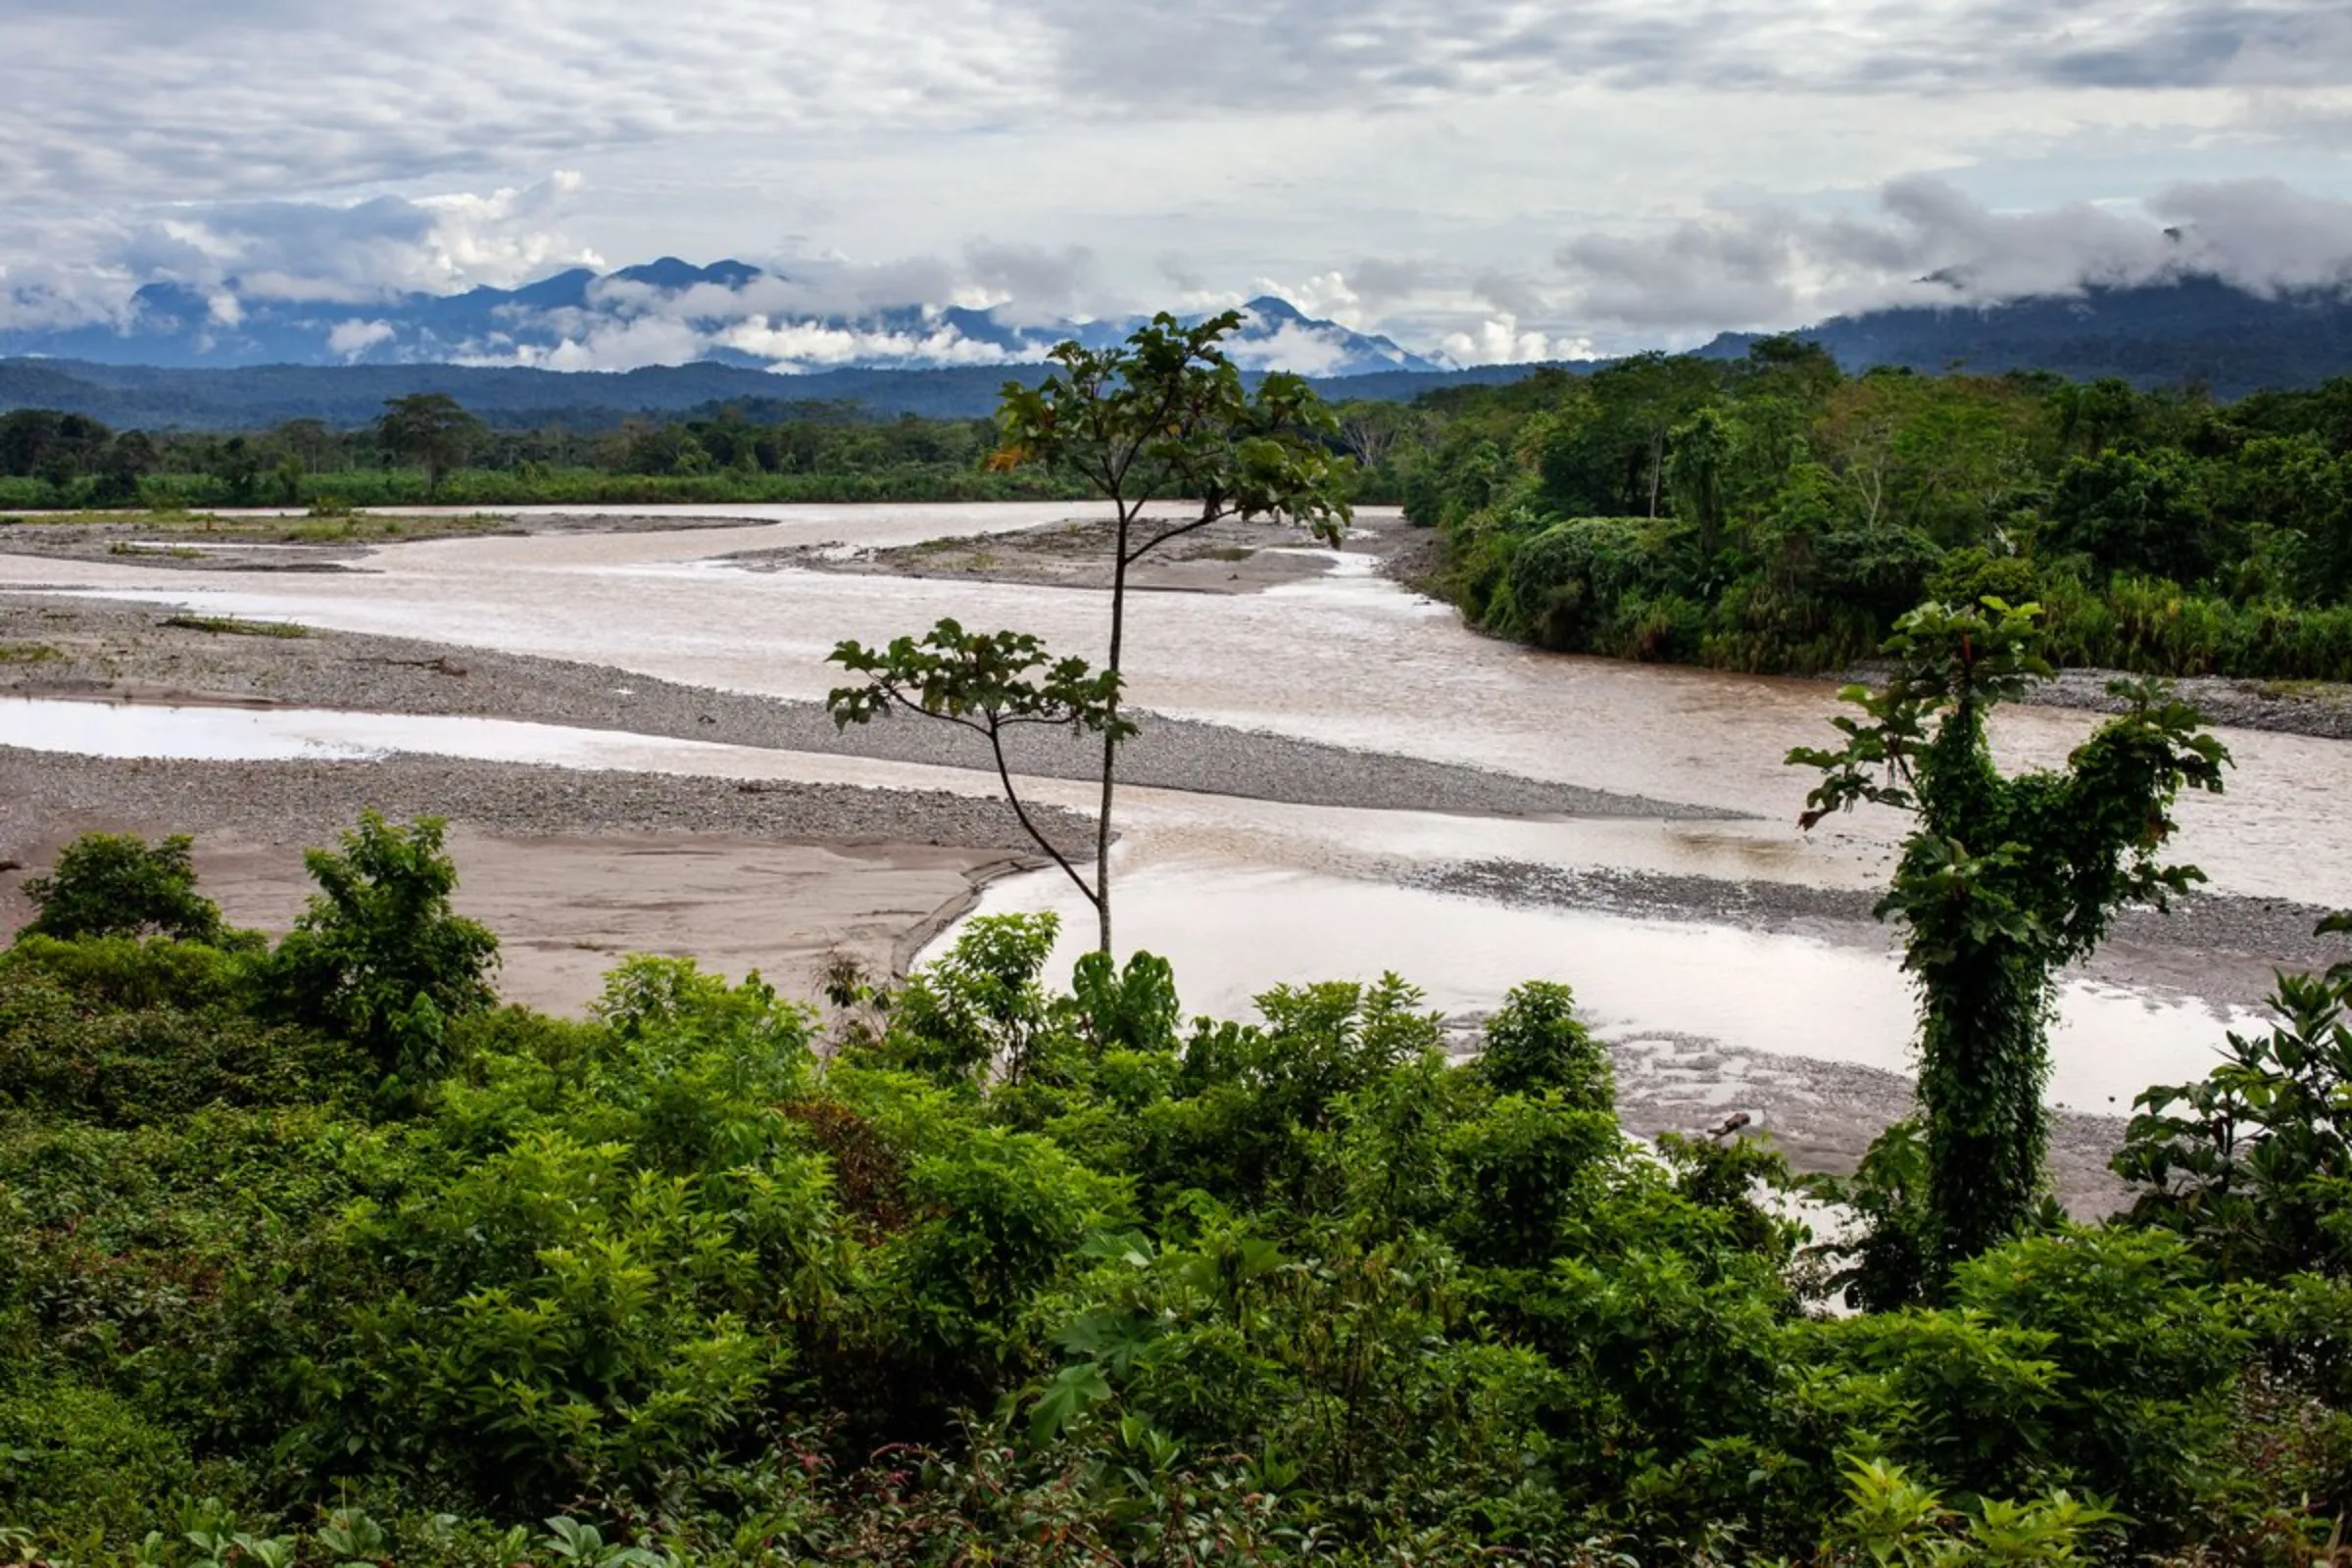 A view of Cofan land in Ecuador’s Cayambe Coca national park, near Sinangoe, Ecuador, on April 22, 2022